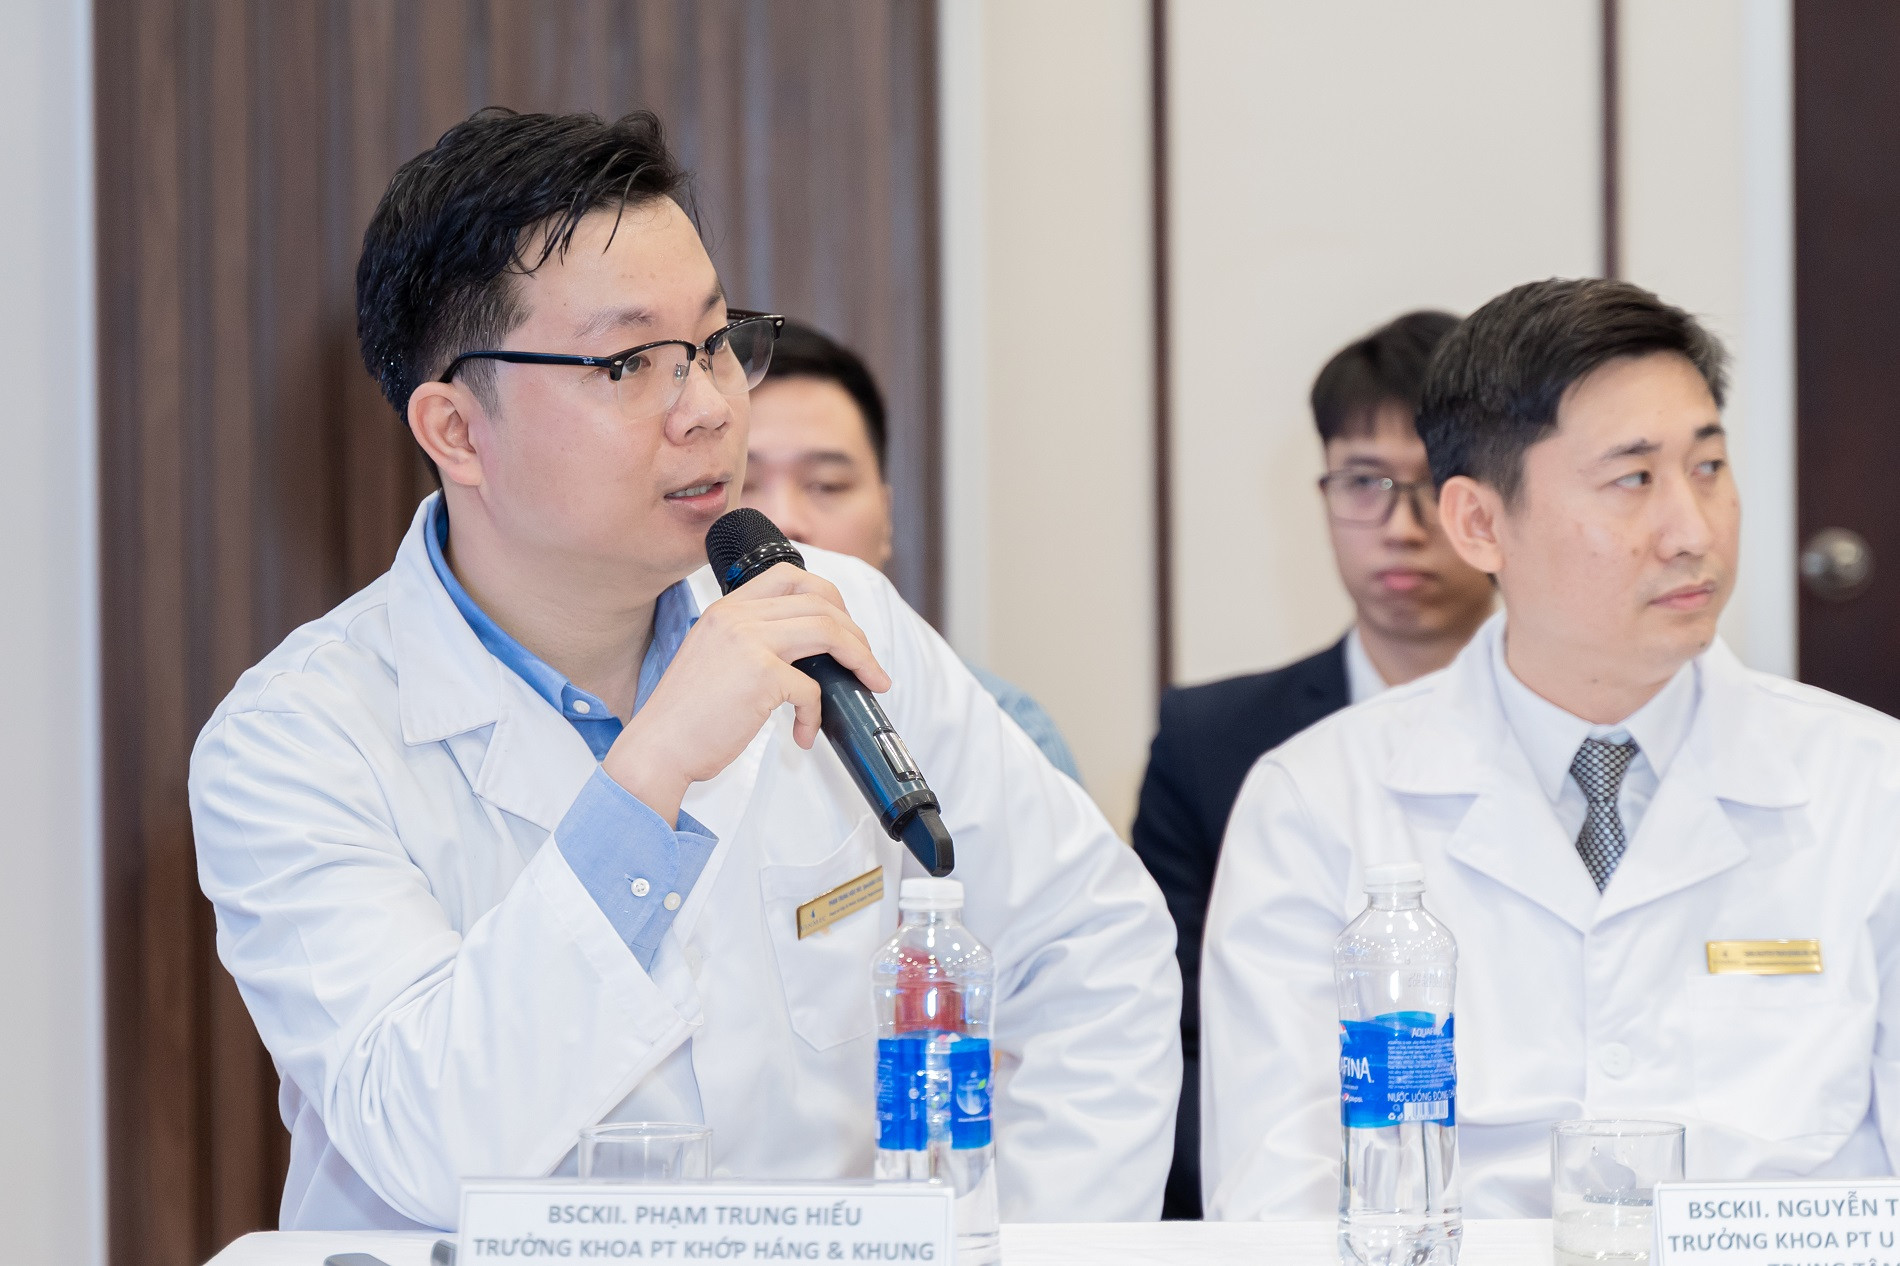 ThS.BSCKII Phạm Trung Hiếu chia sẻ về những bước tiến mới nhất của công nghệ 3D trong y học được áp dụng cho ca bệnh u xương phức tạp.